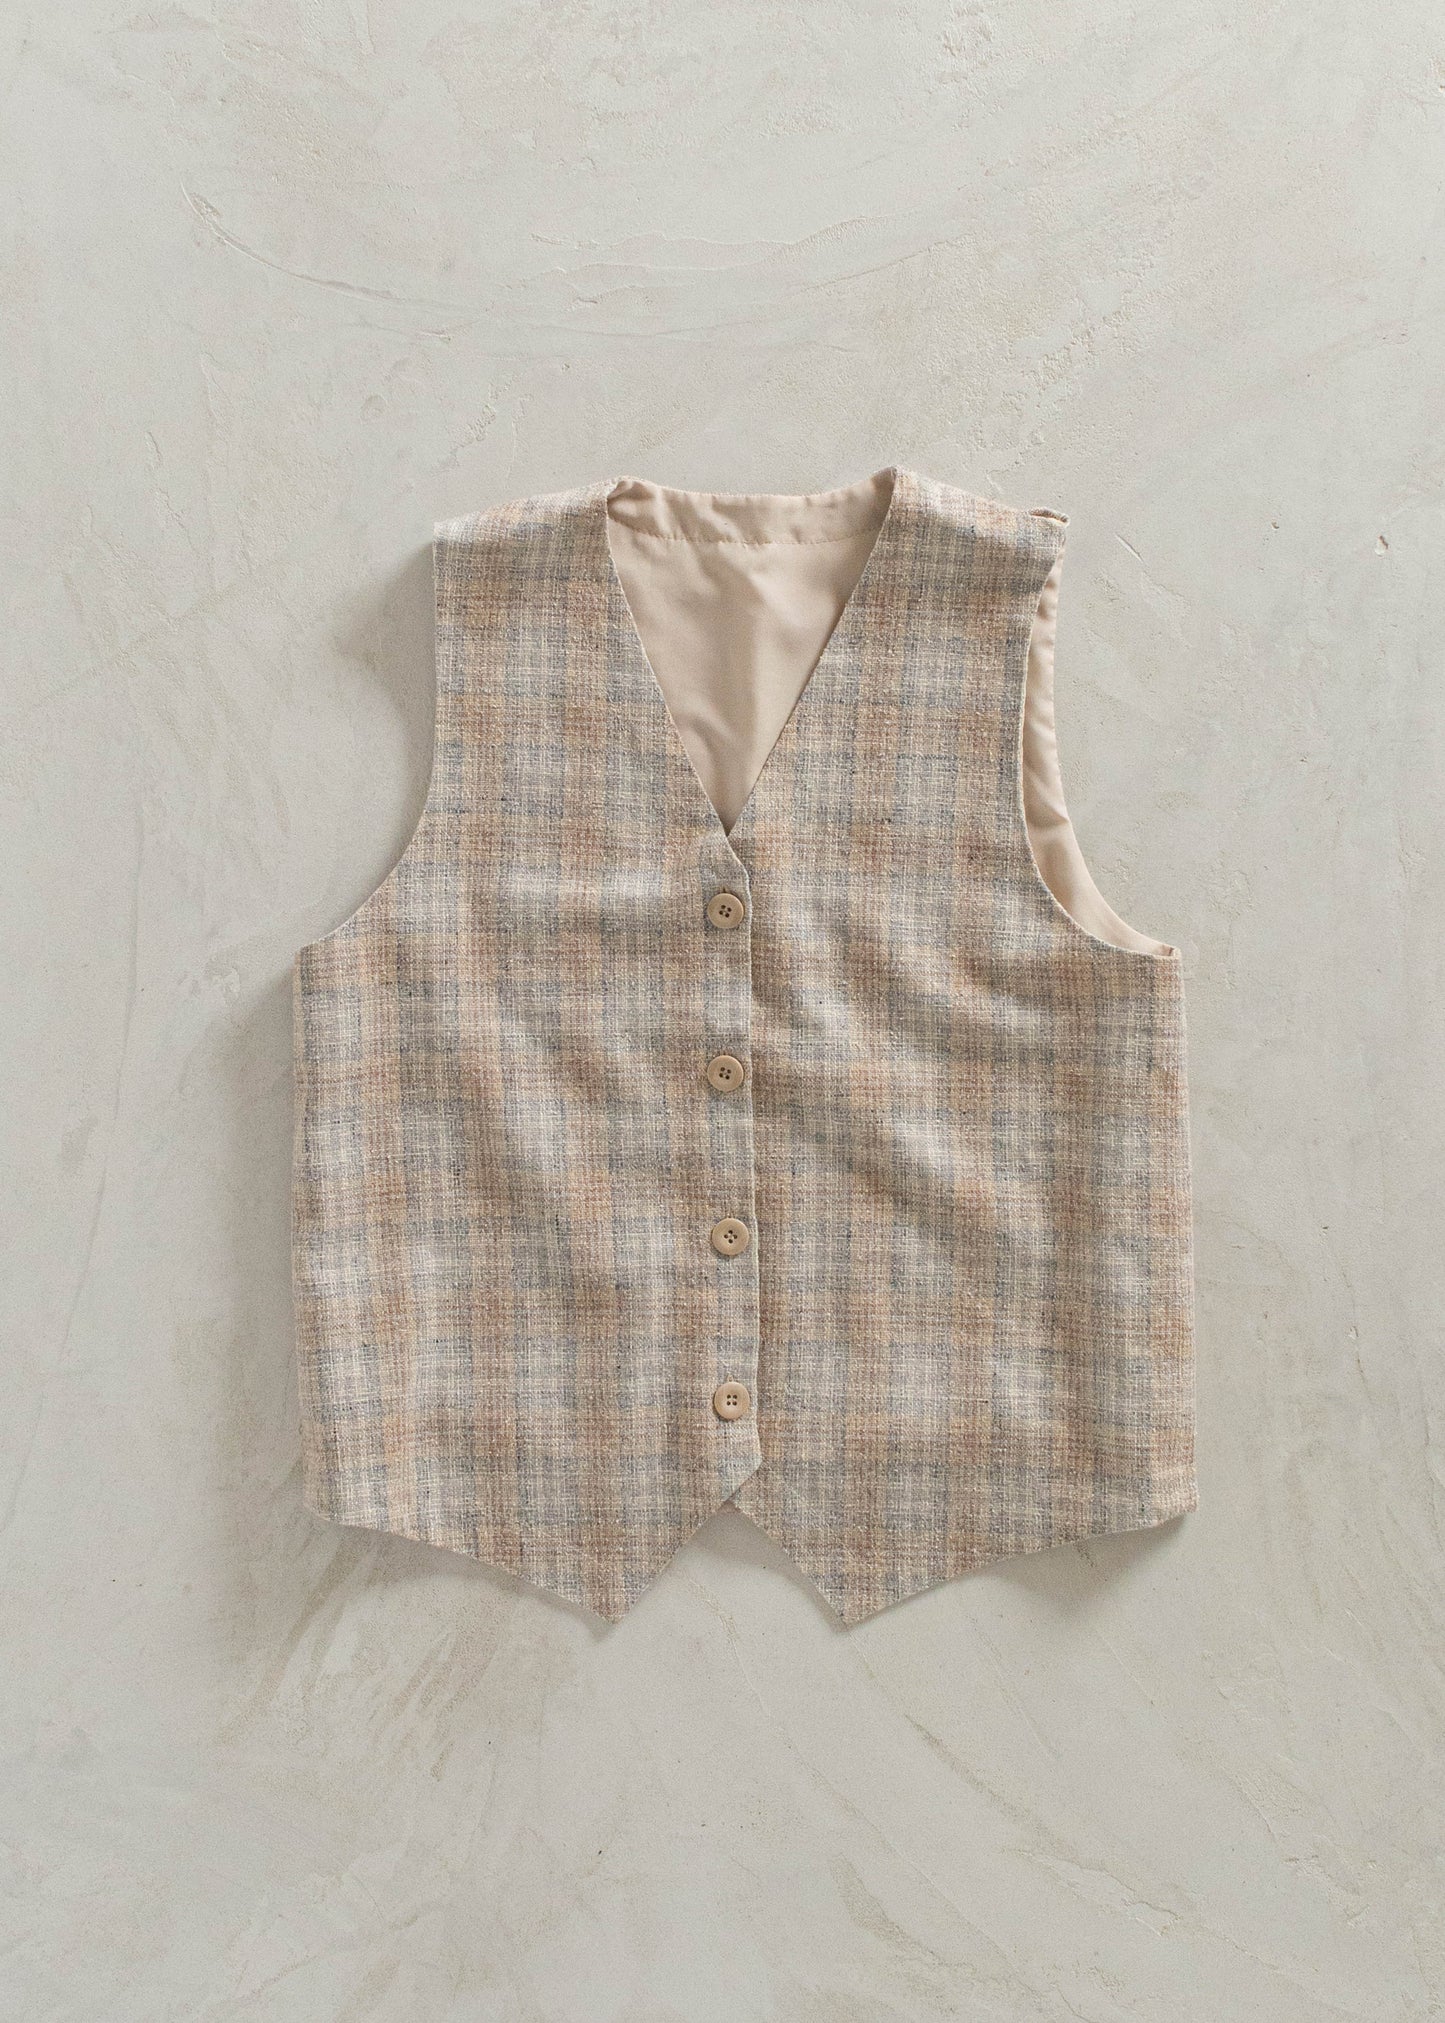 1970s Plaid Pattern Suit Vest Size S/M